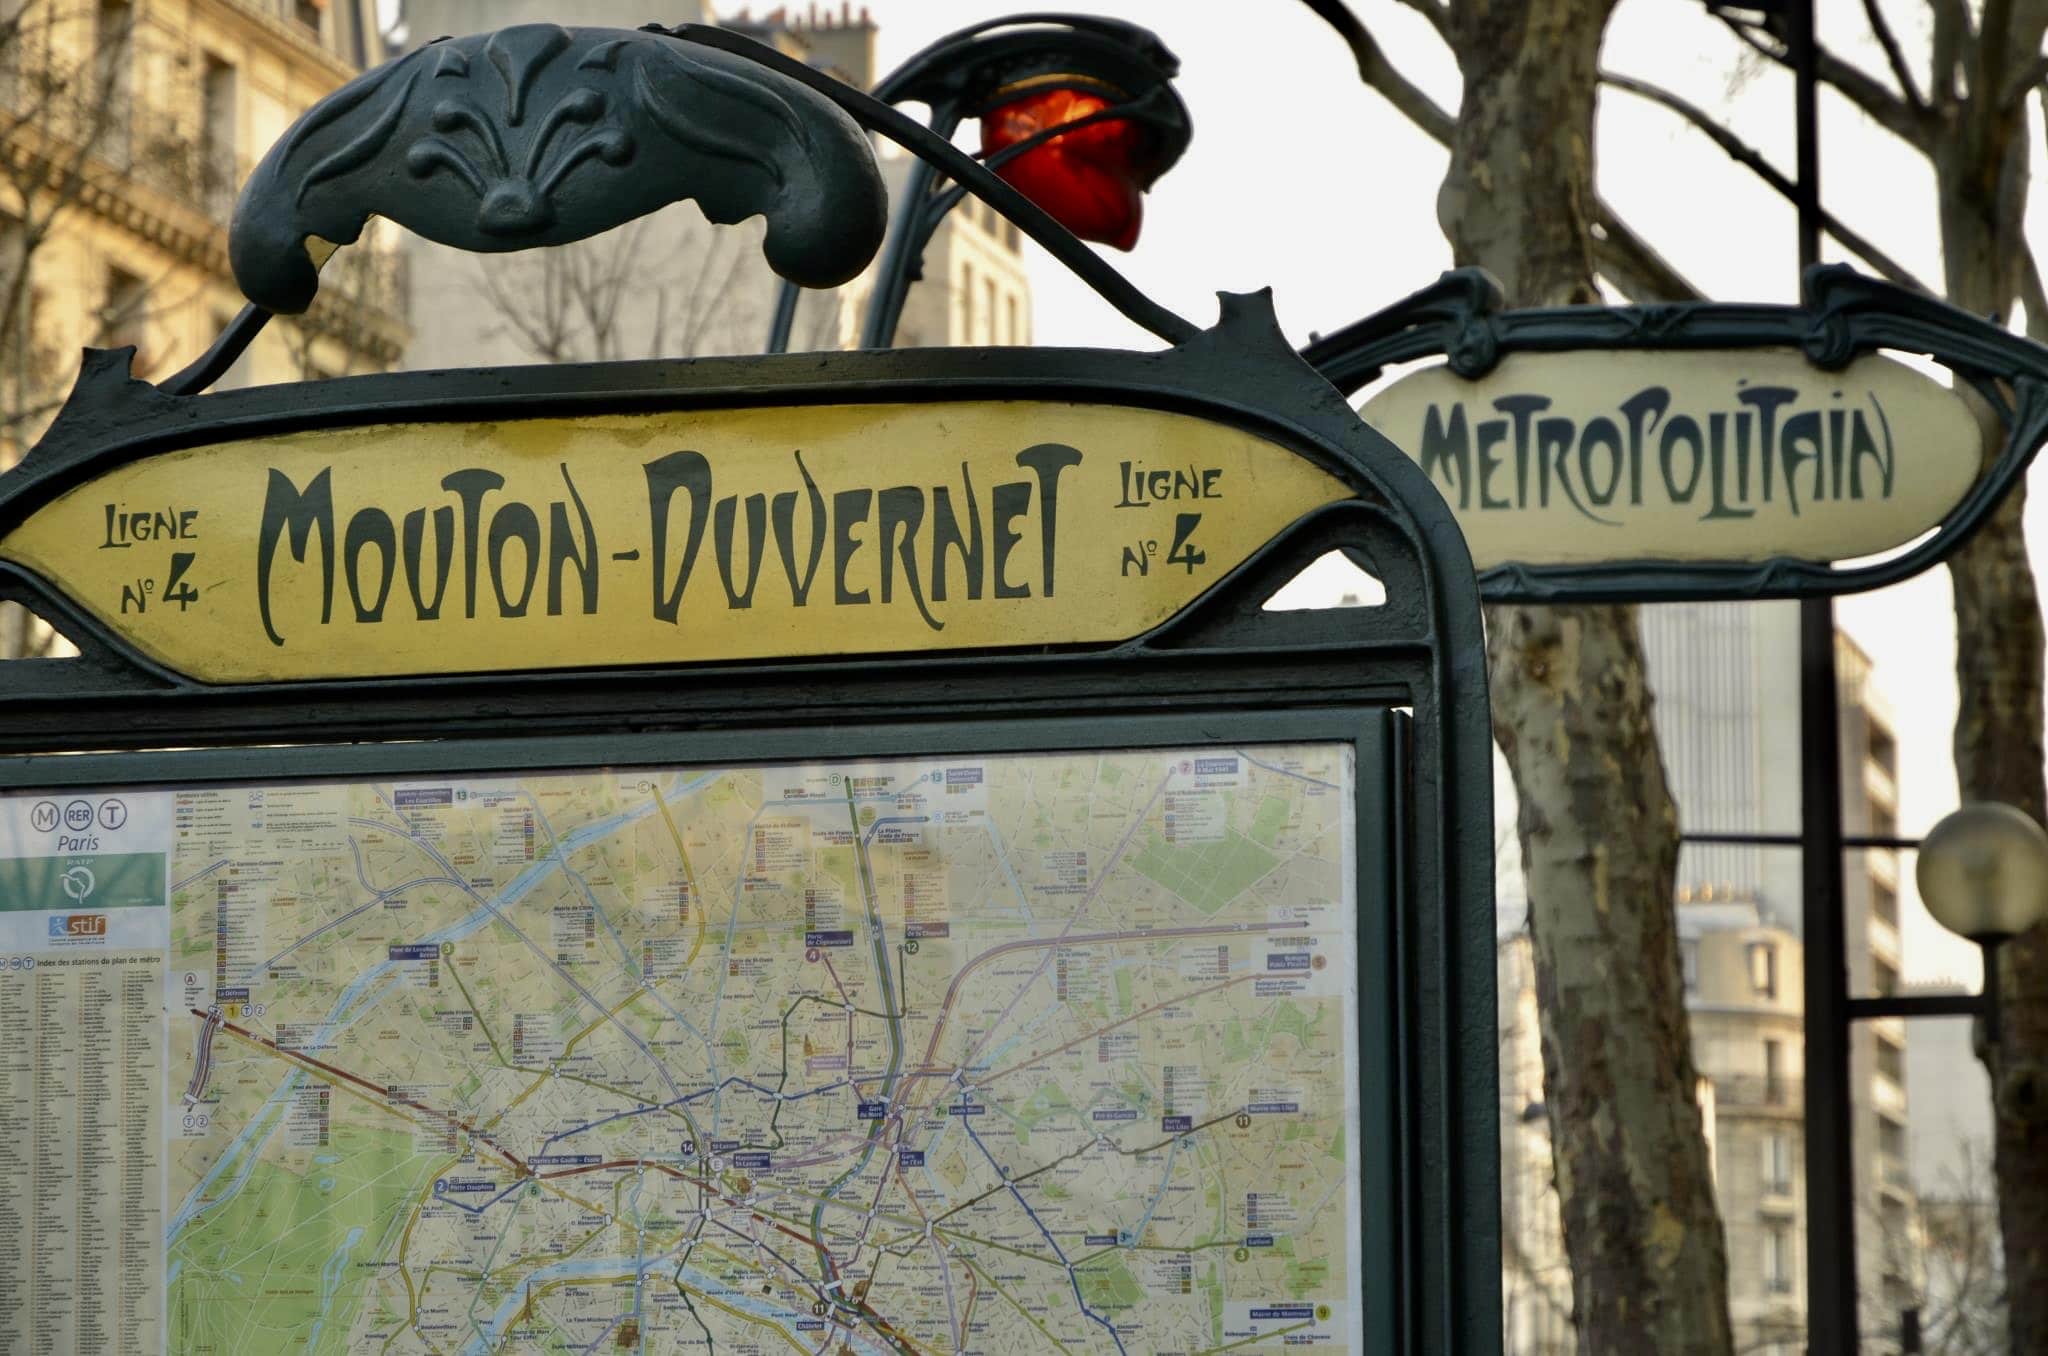 mouton-duvernet-station-metro-paris-napoleon